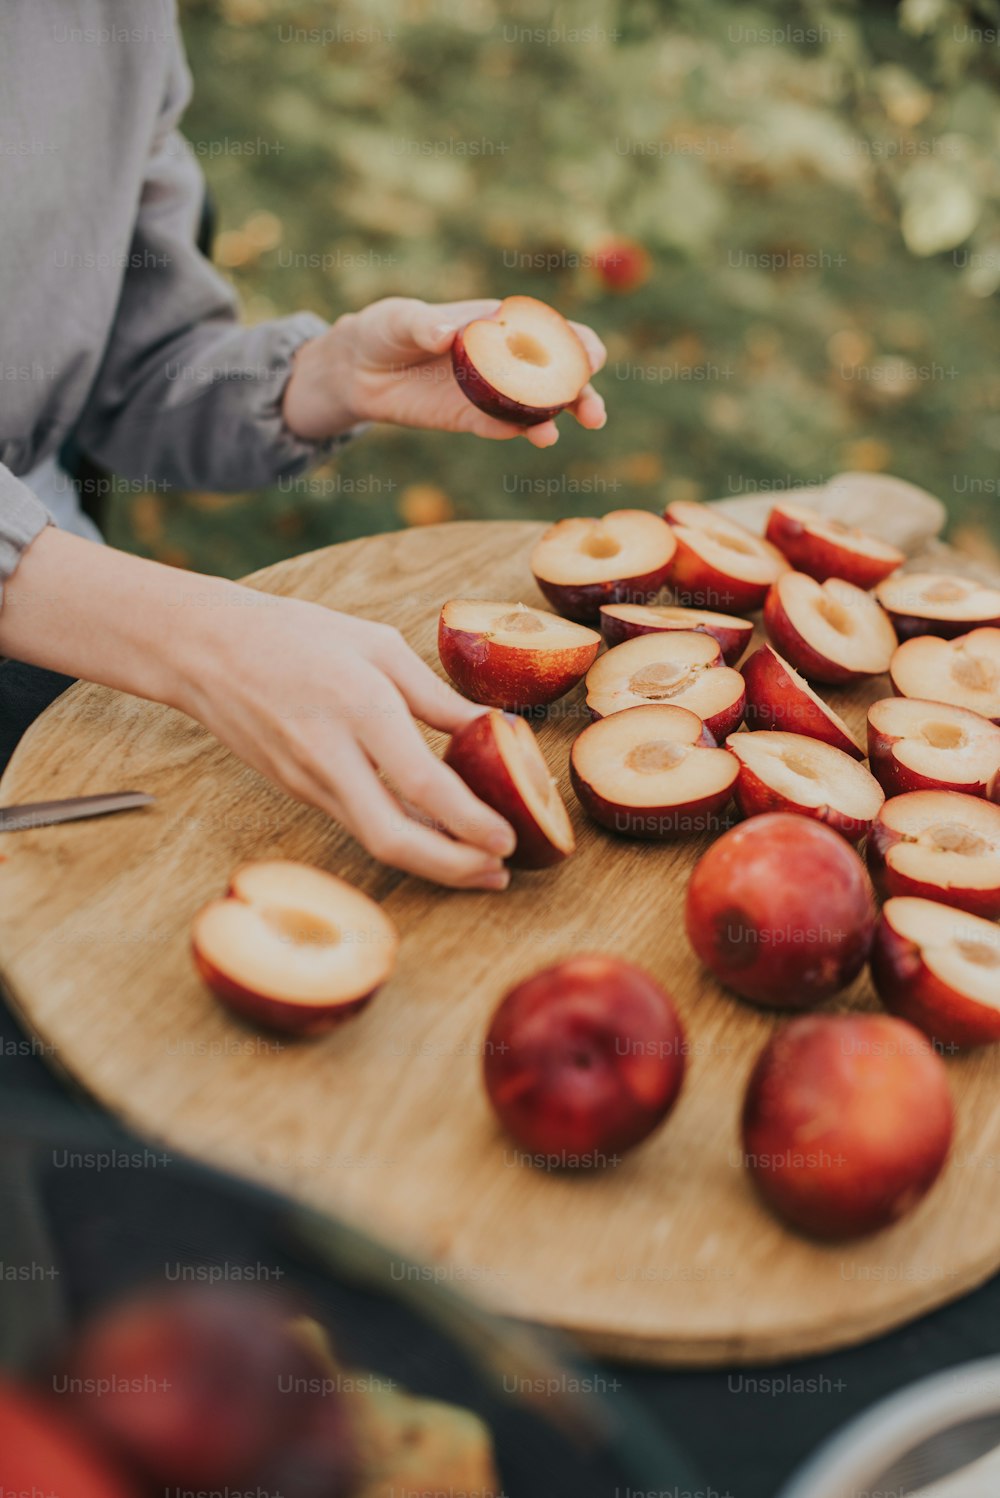 Una persona cortando manzanas en una tabla de cortar